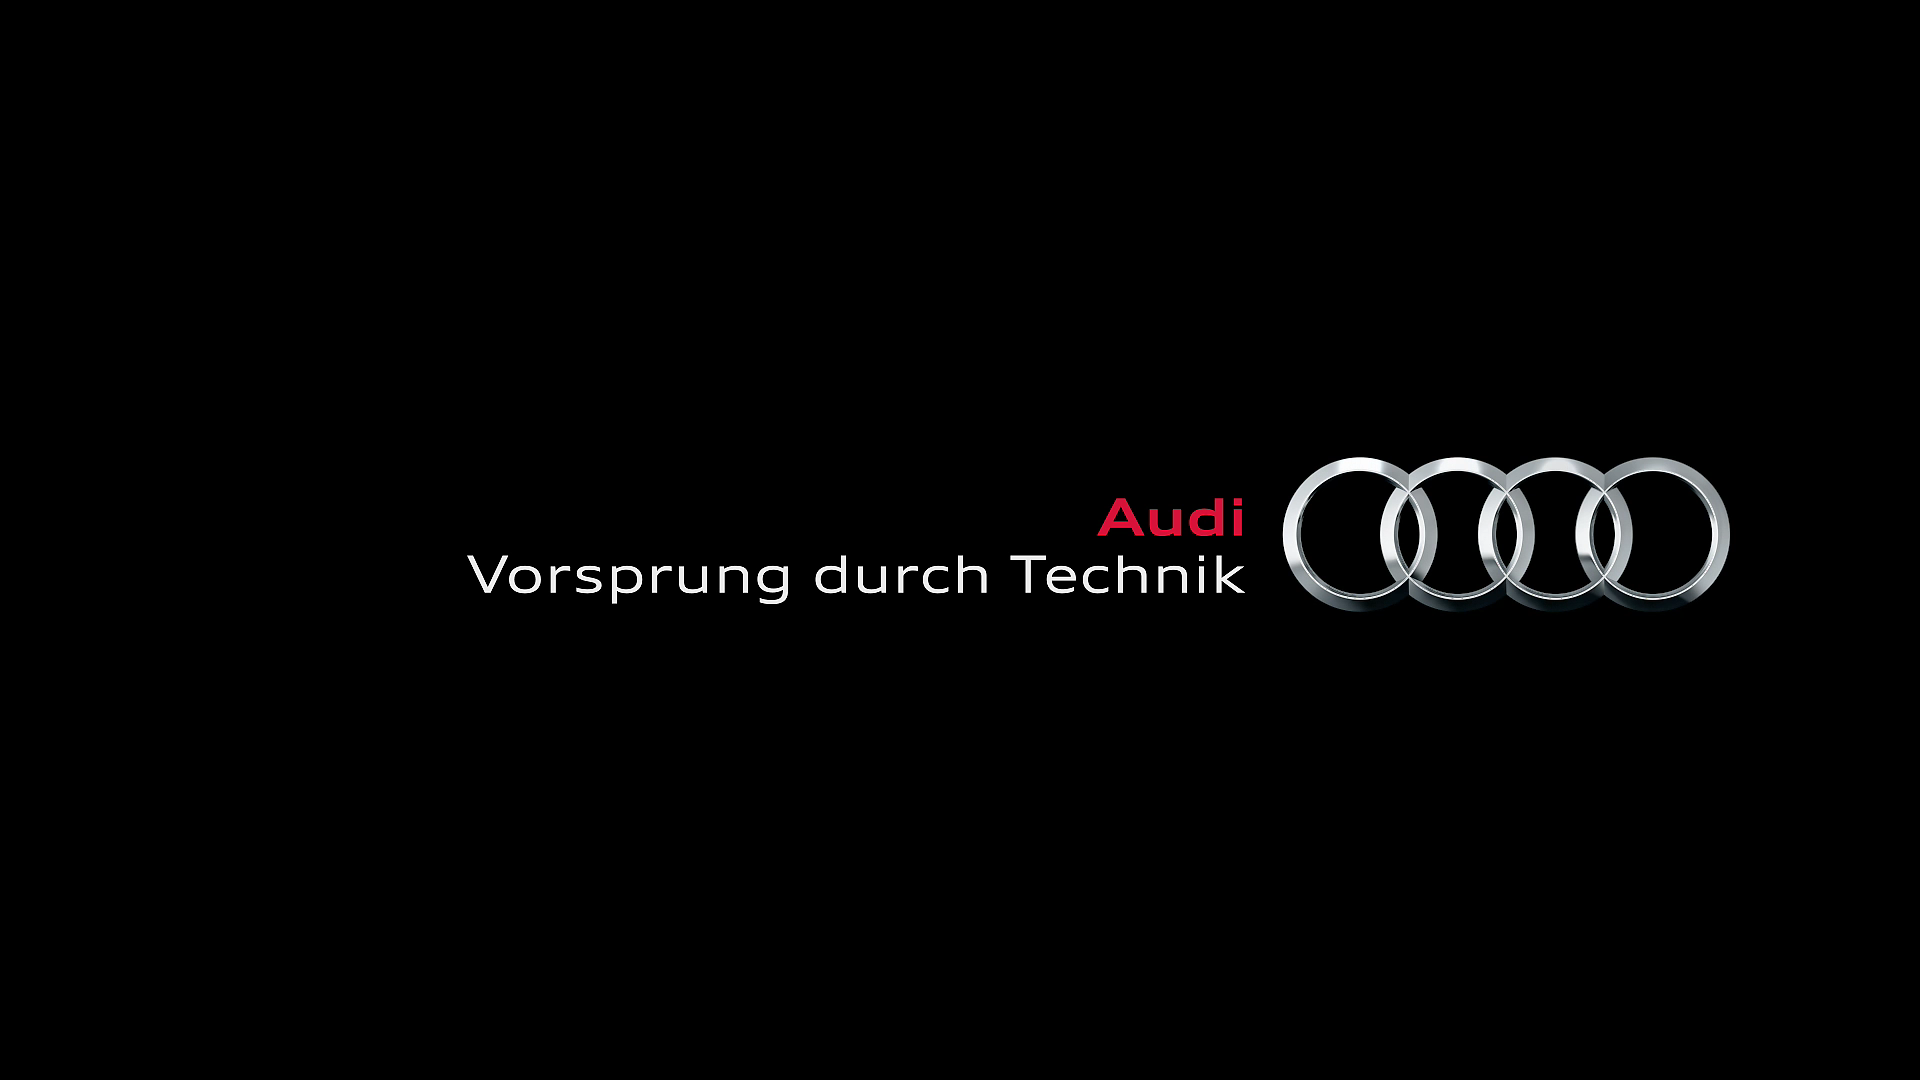 Vorsprung durch technik (Lợi thế nhờ công nghệ) - Audi